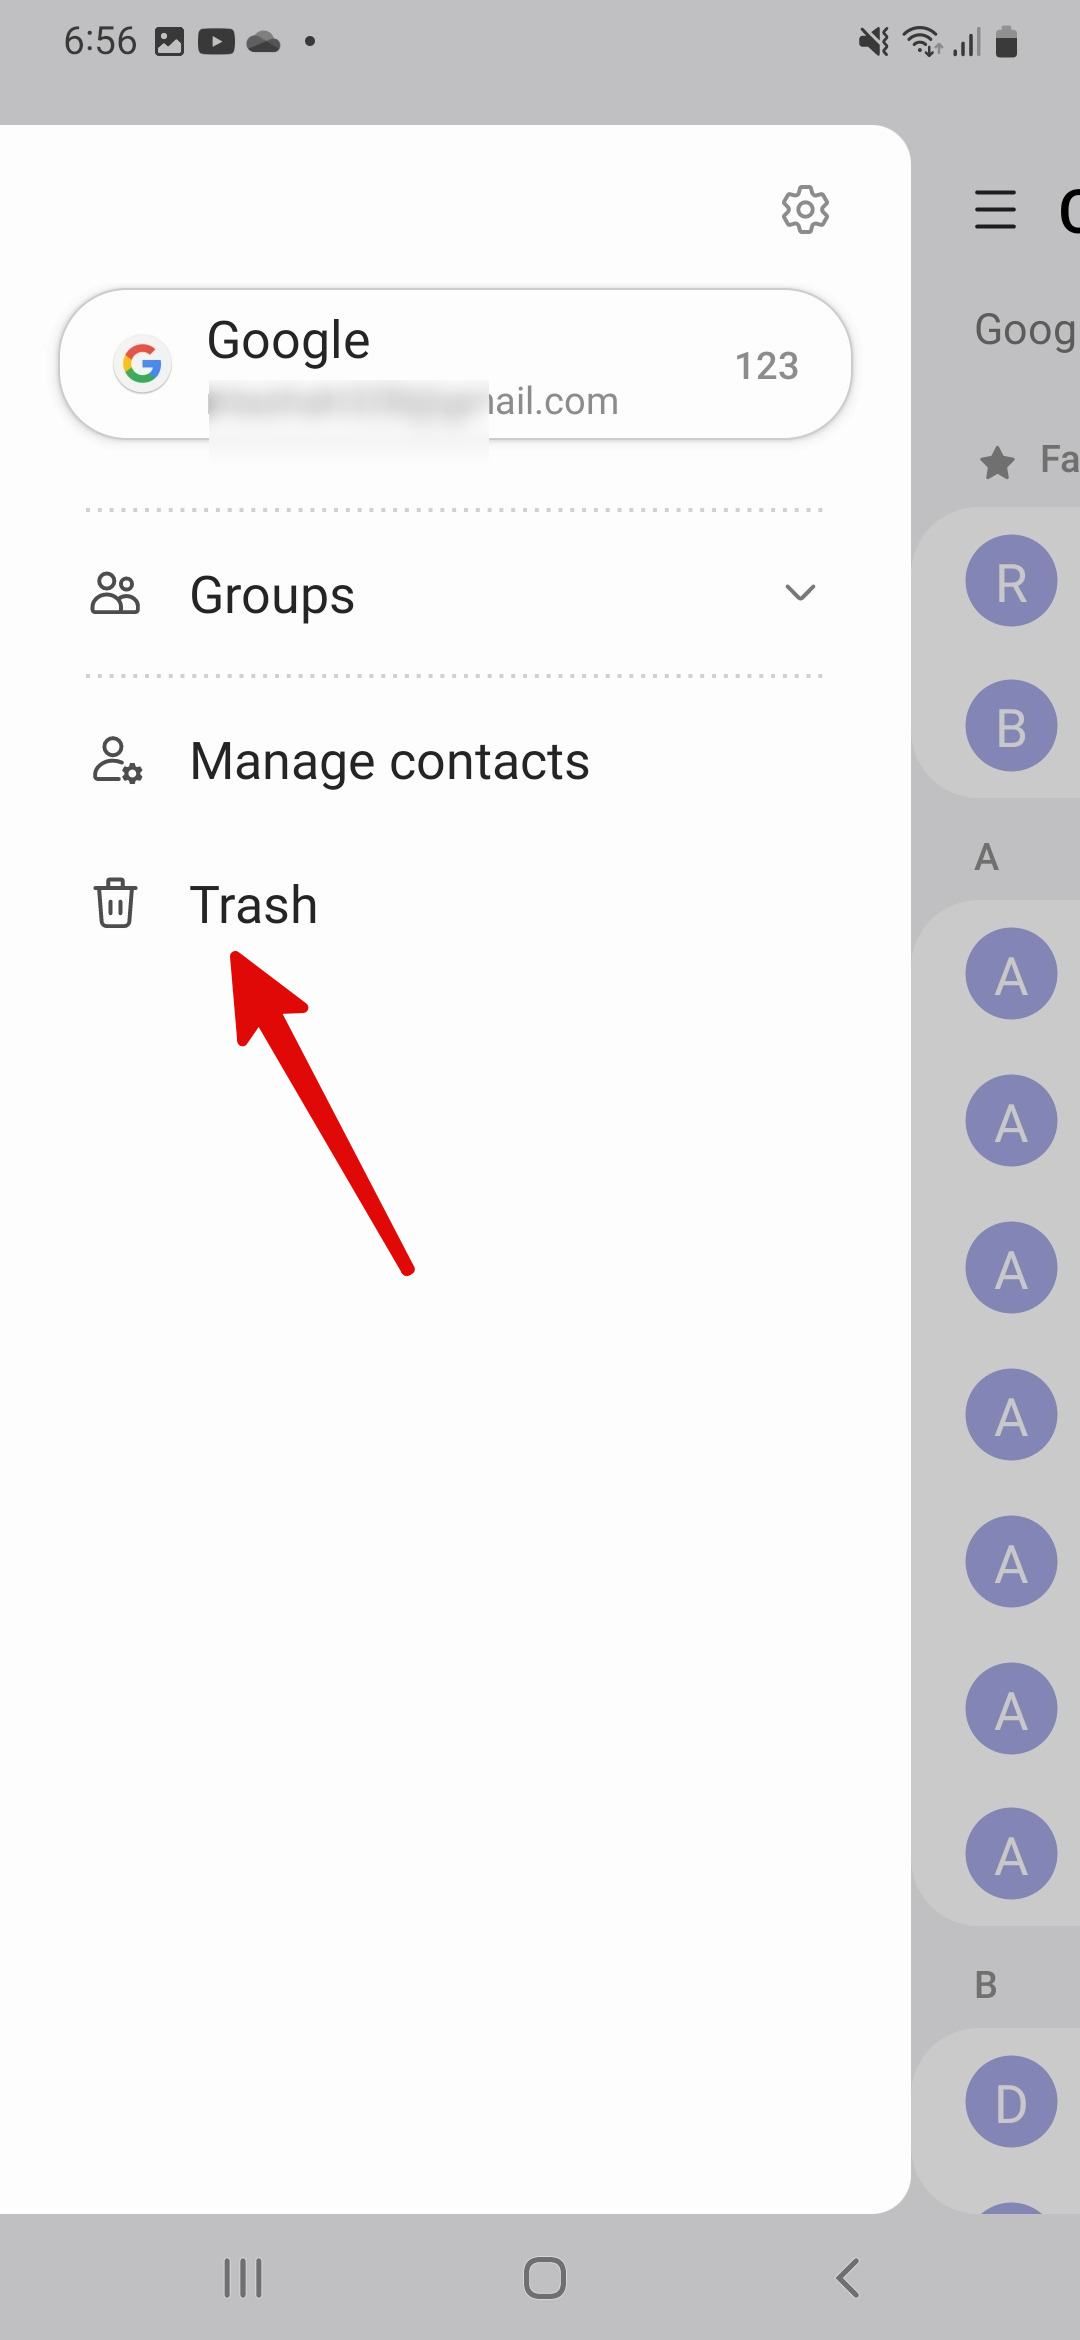 Menu de opções do aplicativo Samsung Contacts apontando para o ícone da Lixeira